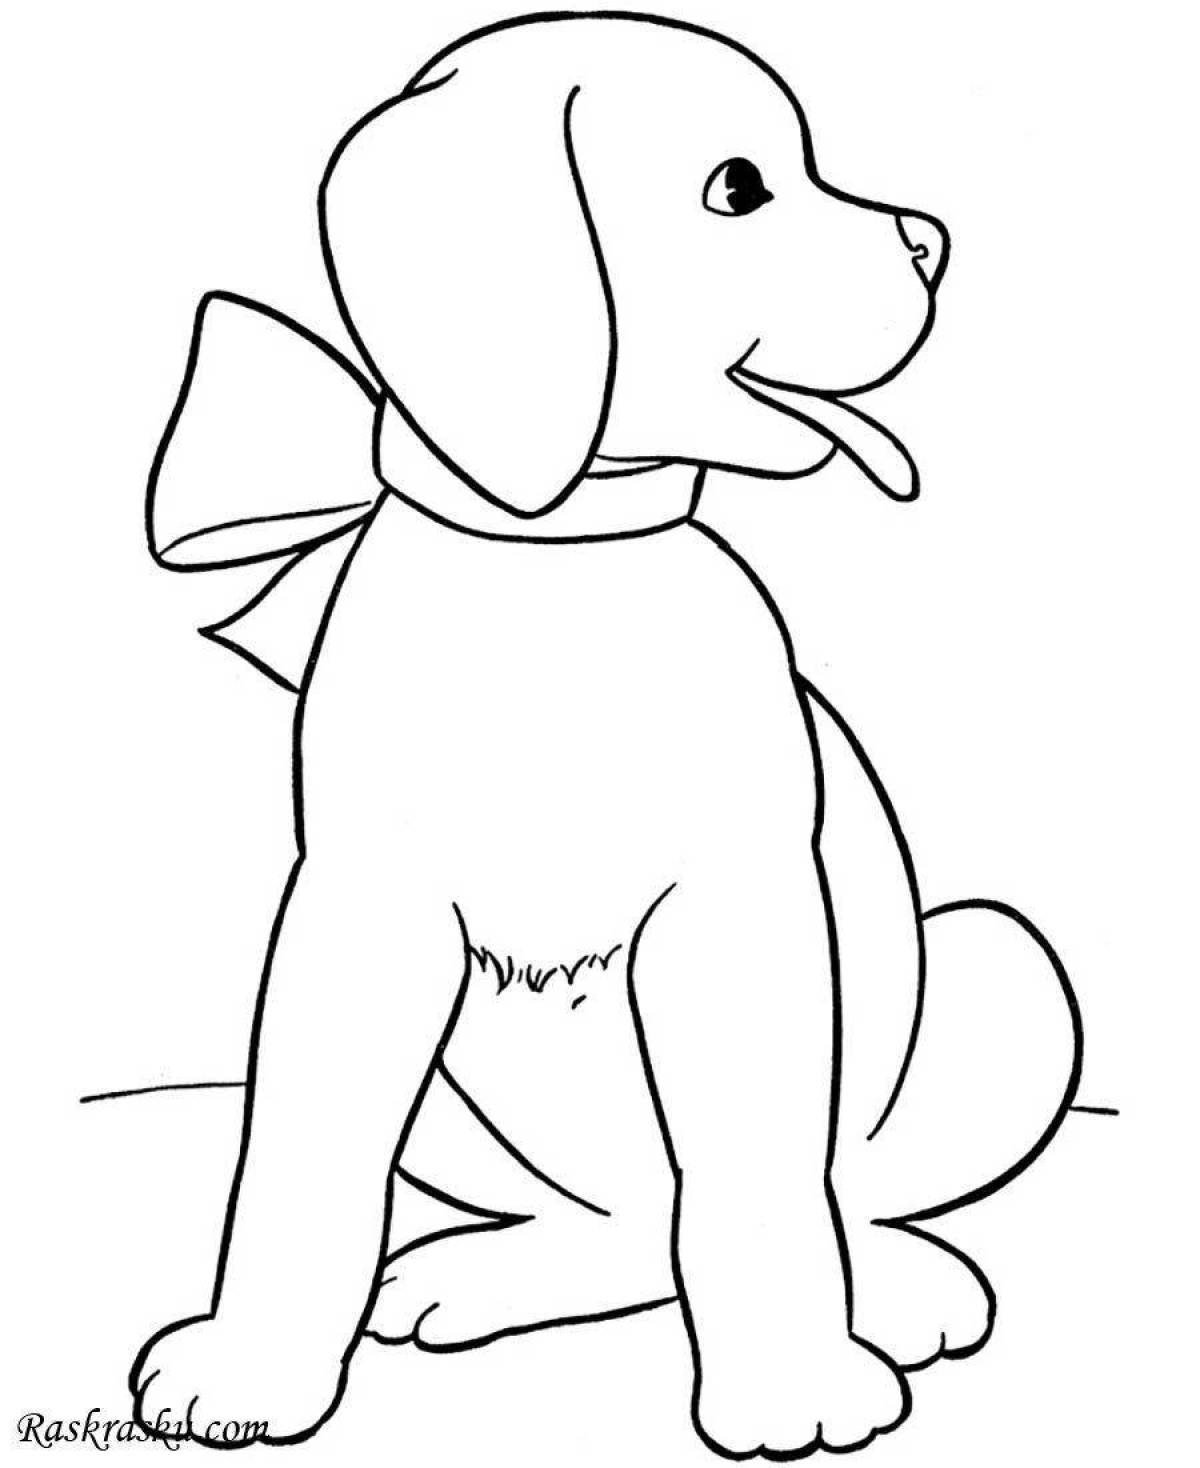 Великолепная собачка-раскраска для детей 3-4 лет